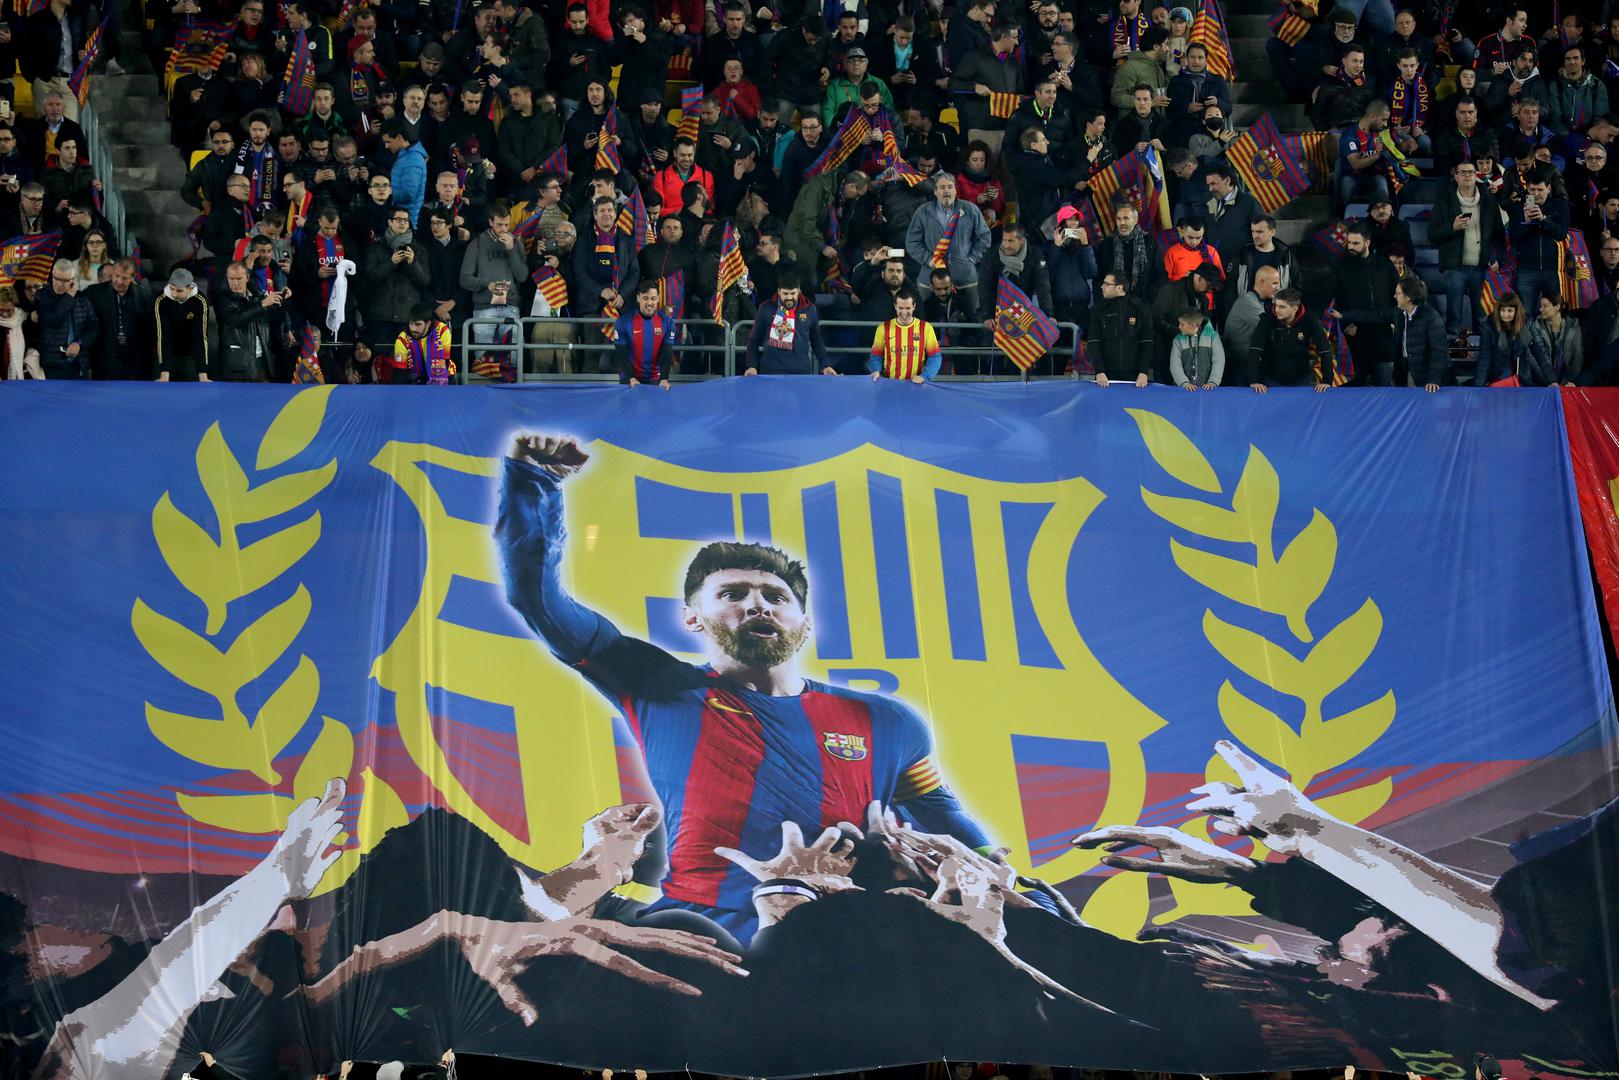 Bila je to dobrodošlica za najboljeg nogometaša Barcelone Lionela Messija.

